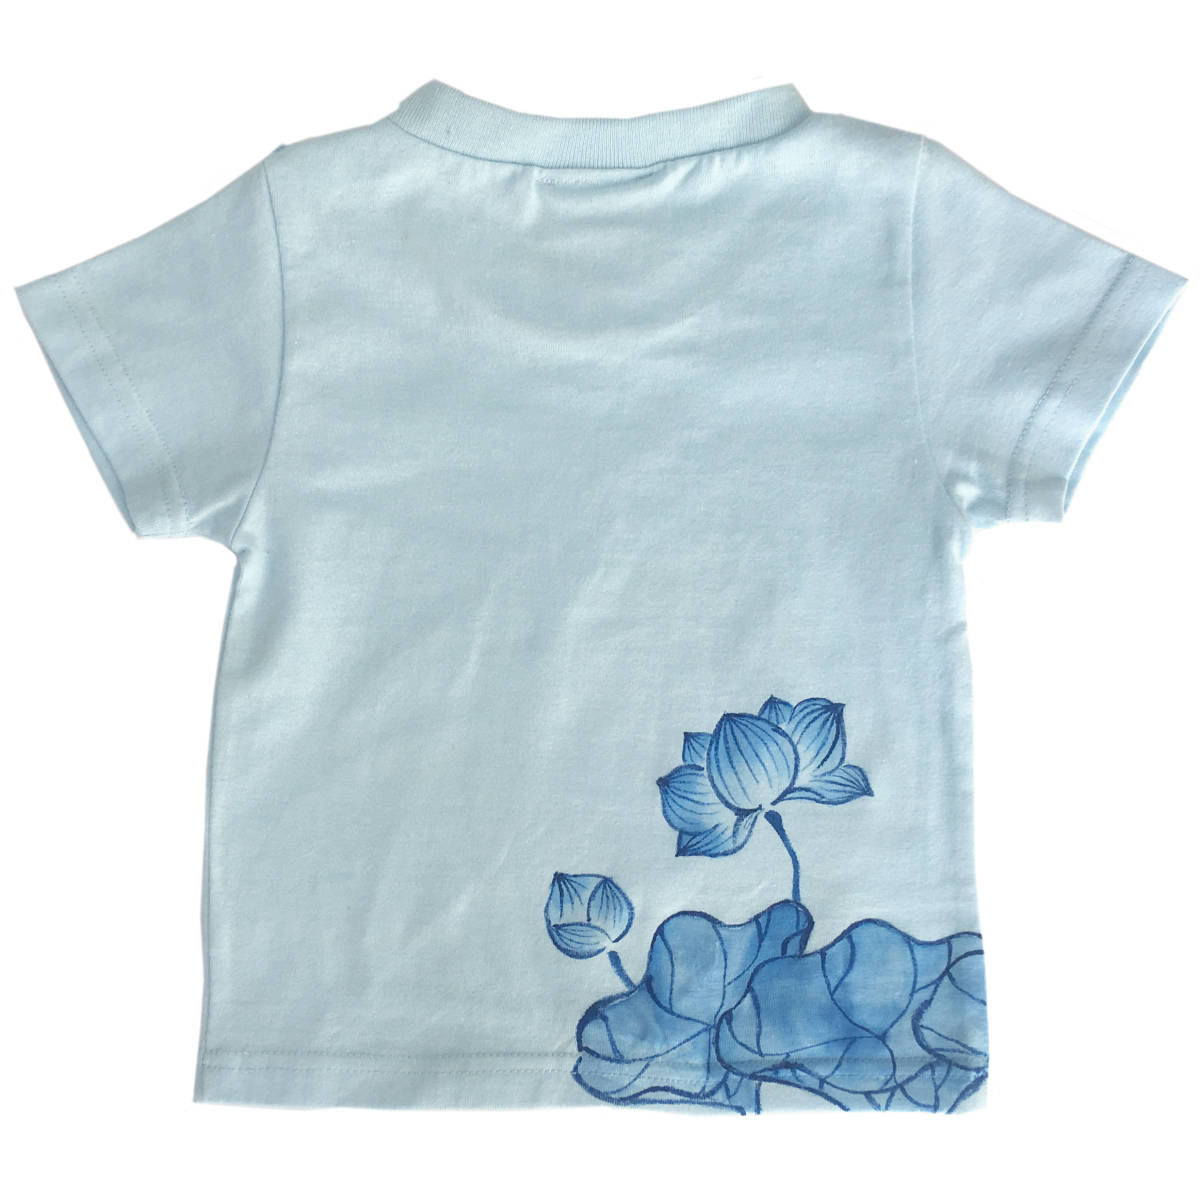 キッズ Tシャツ 110サイズ ブルー 蓮柄Tシャツ 手描きで描いた蓮の花柄Tシャツ 半袖 和柄 和風 レトロ ハンドメイド